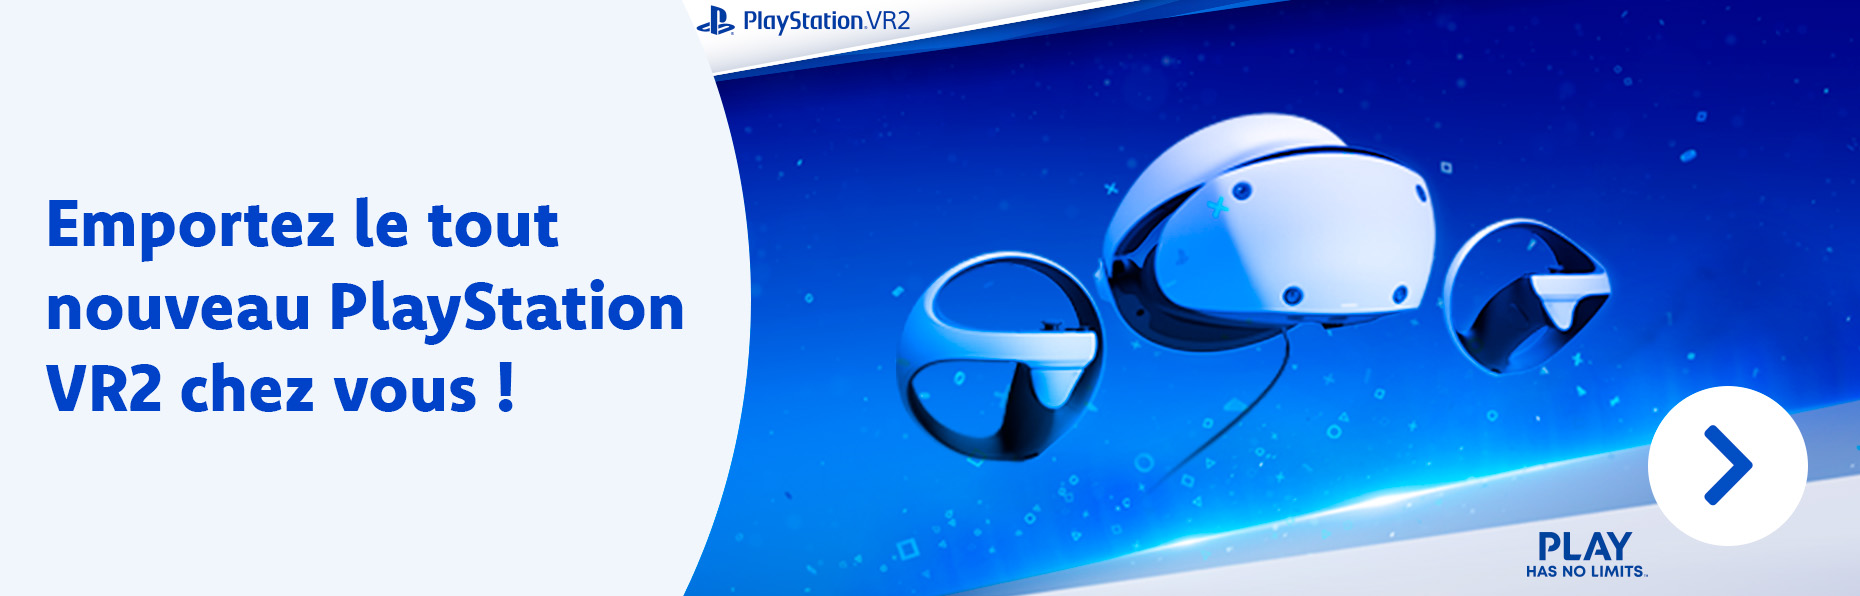 Dès le 12 mai, le PlayStation VR2 sera disponible dans votre magasin DreamLand. Découvez-le maintenant !